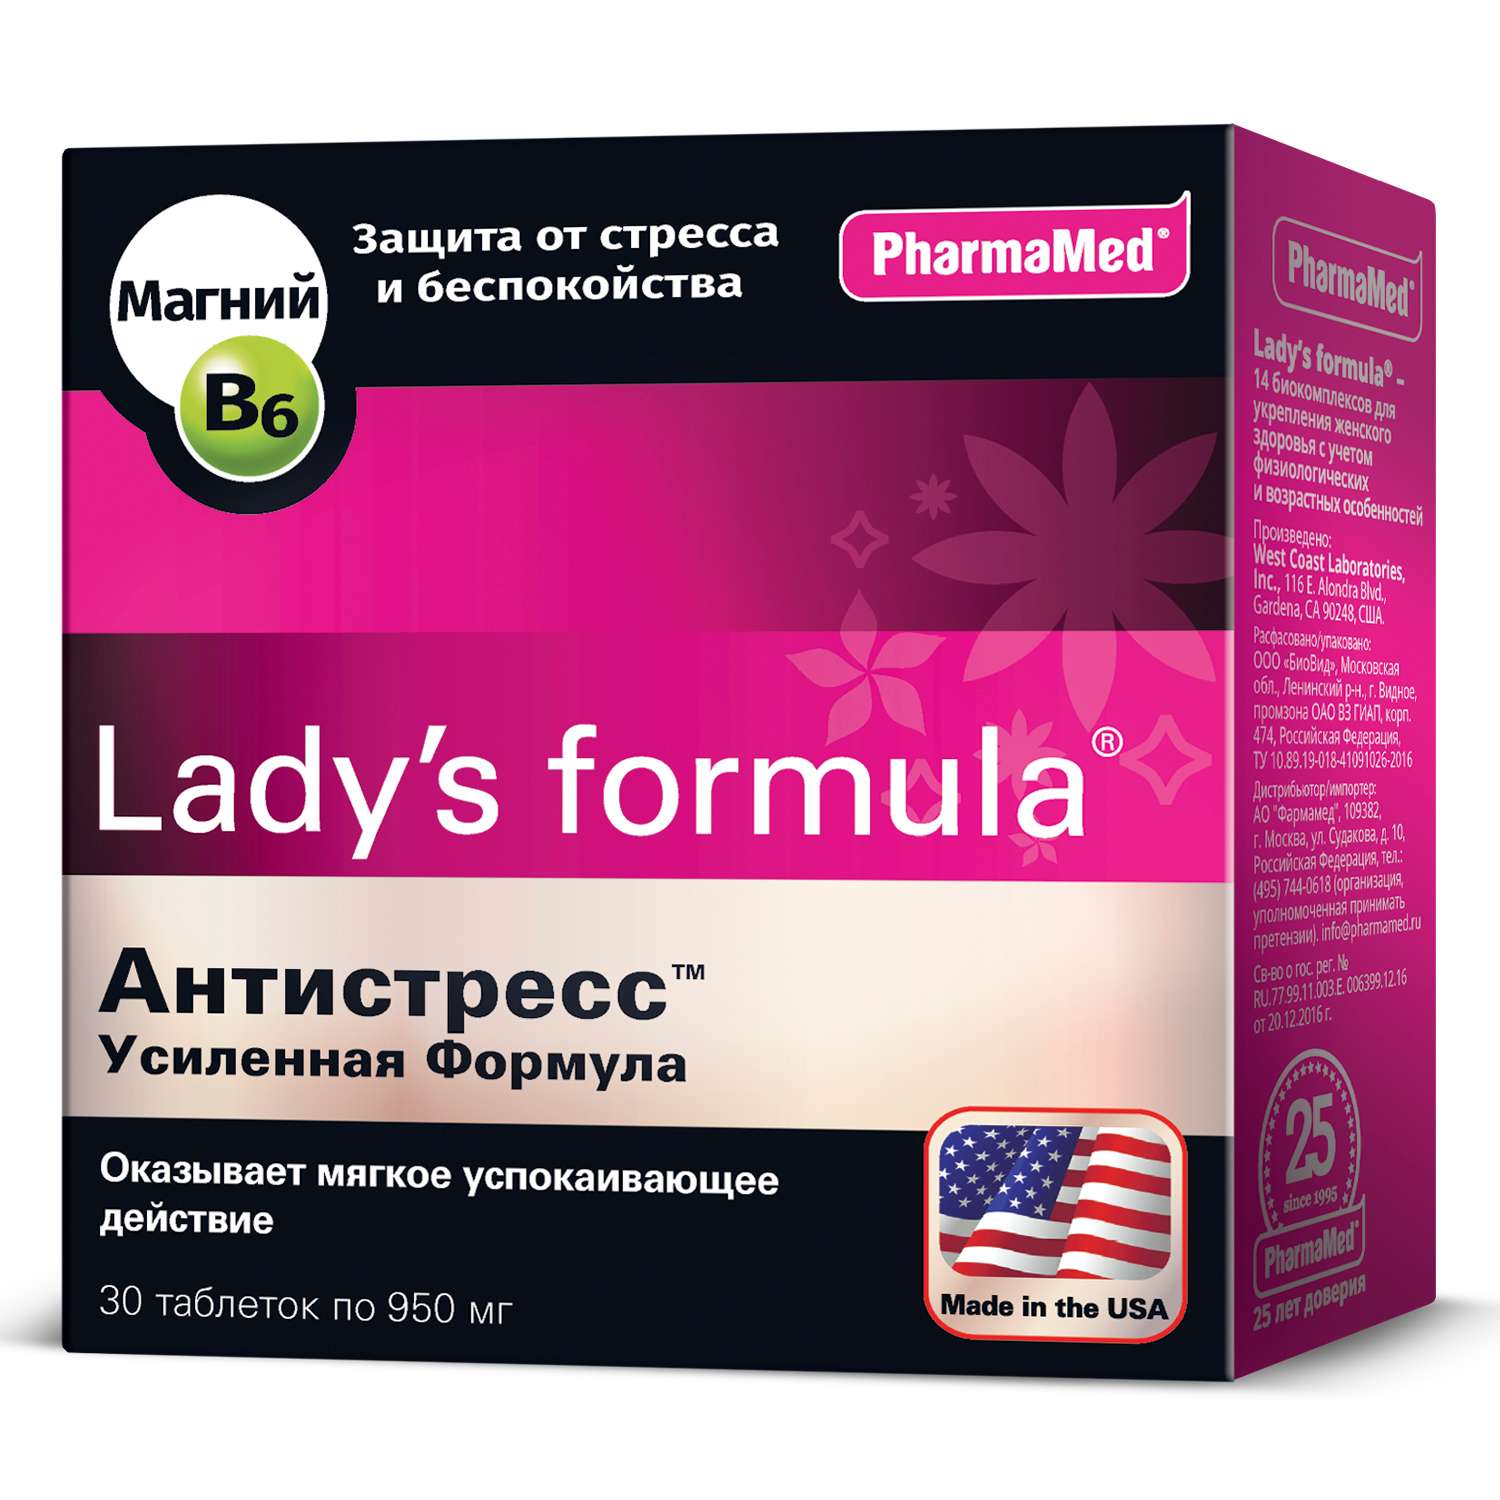 Биологически активная добавка Ladys formula Антистресс усиленная формула 30таблеток - фото 1